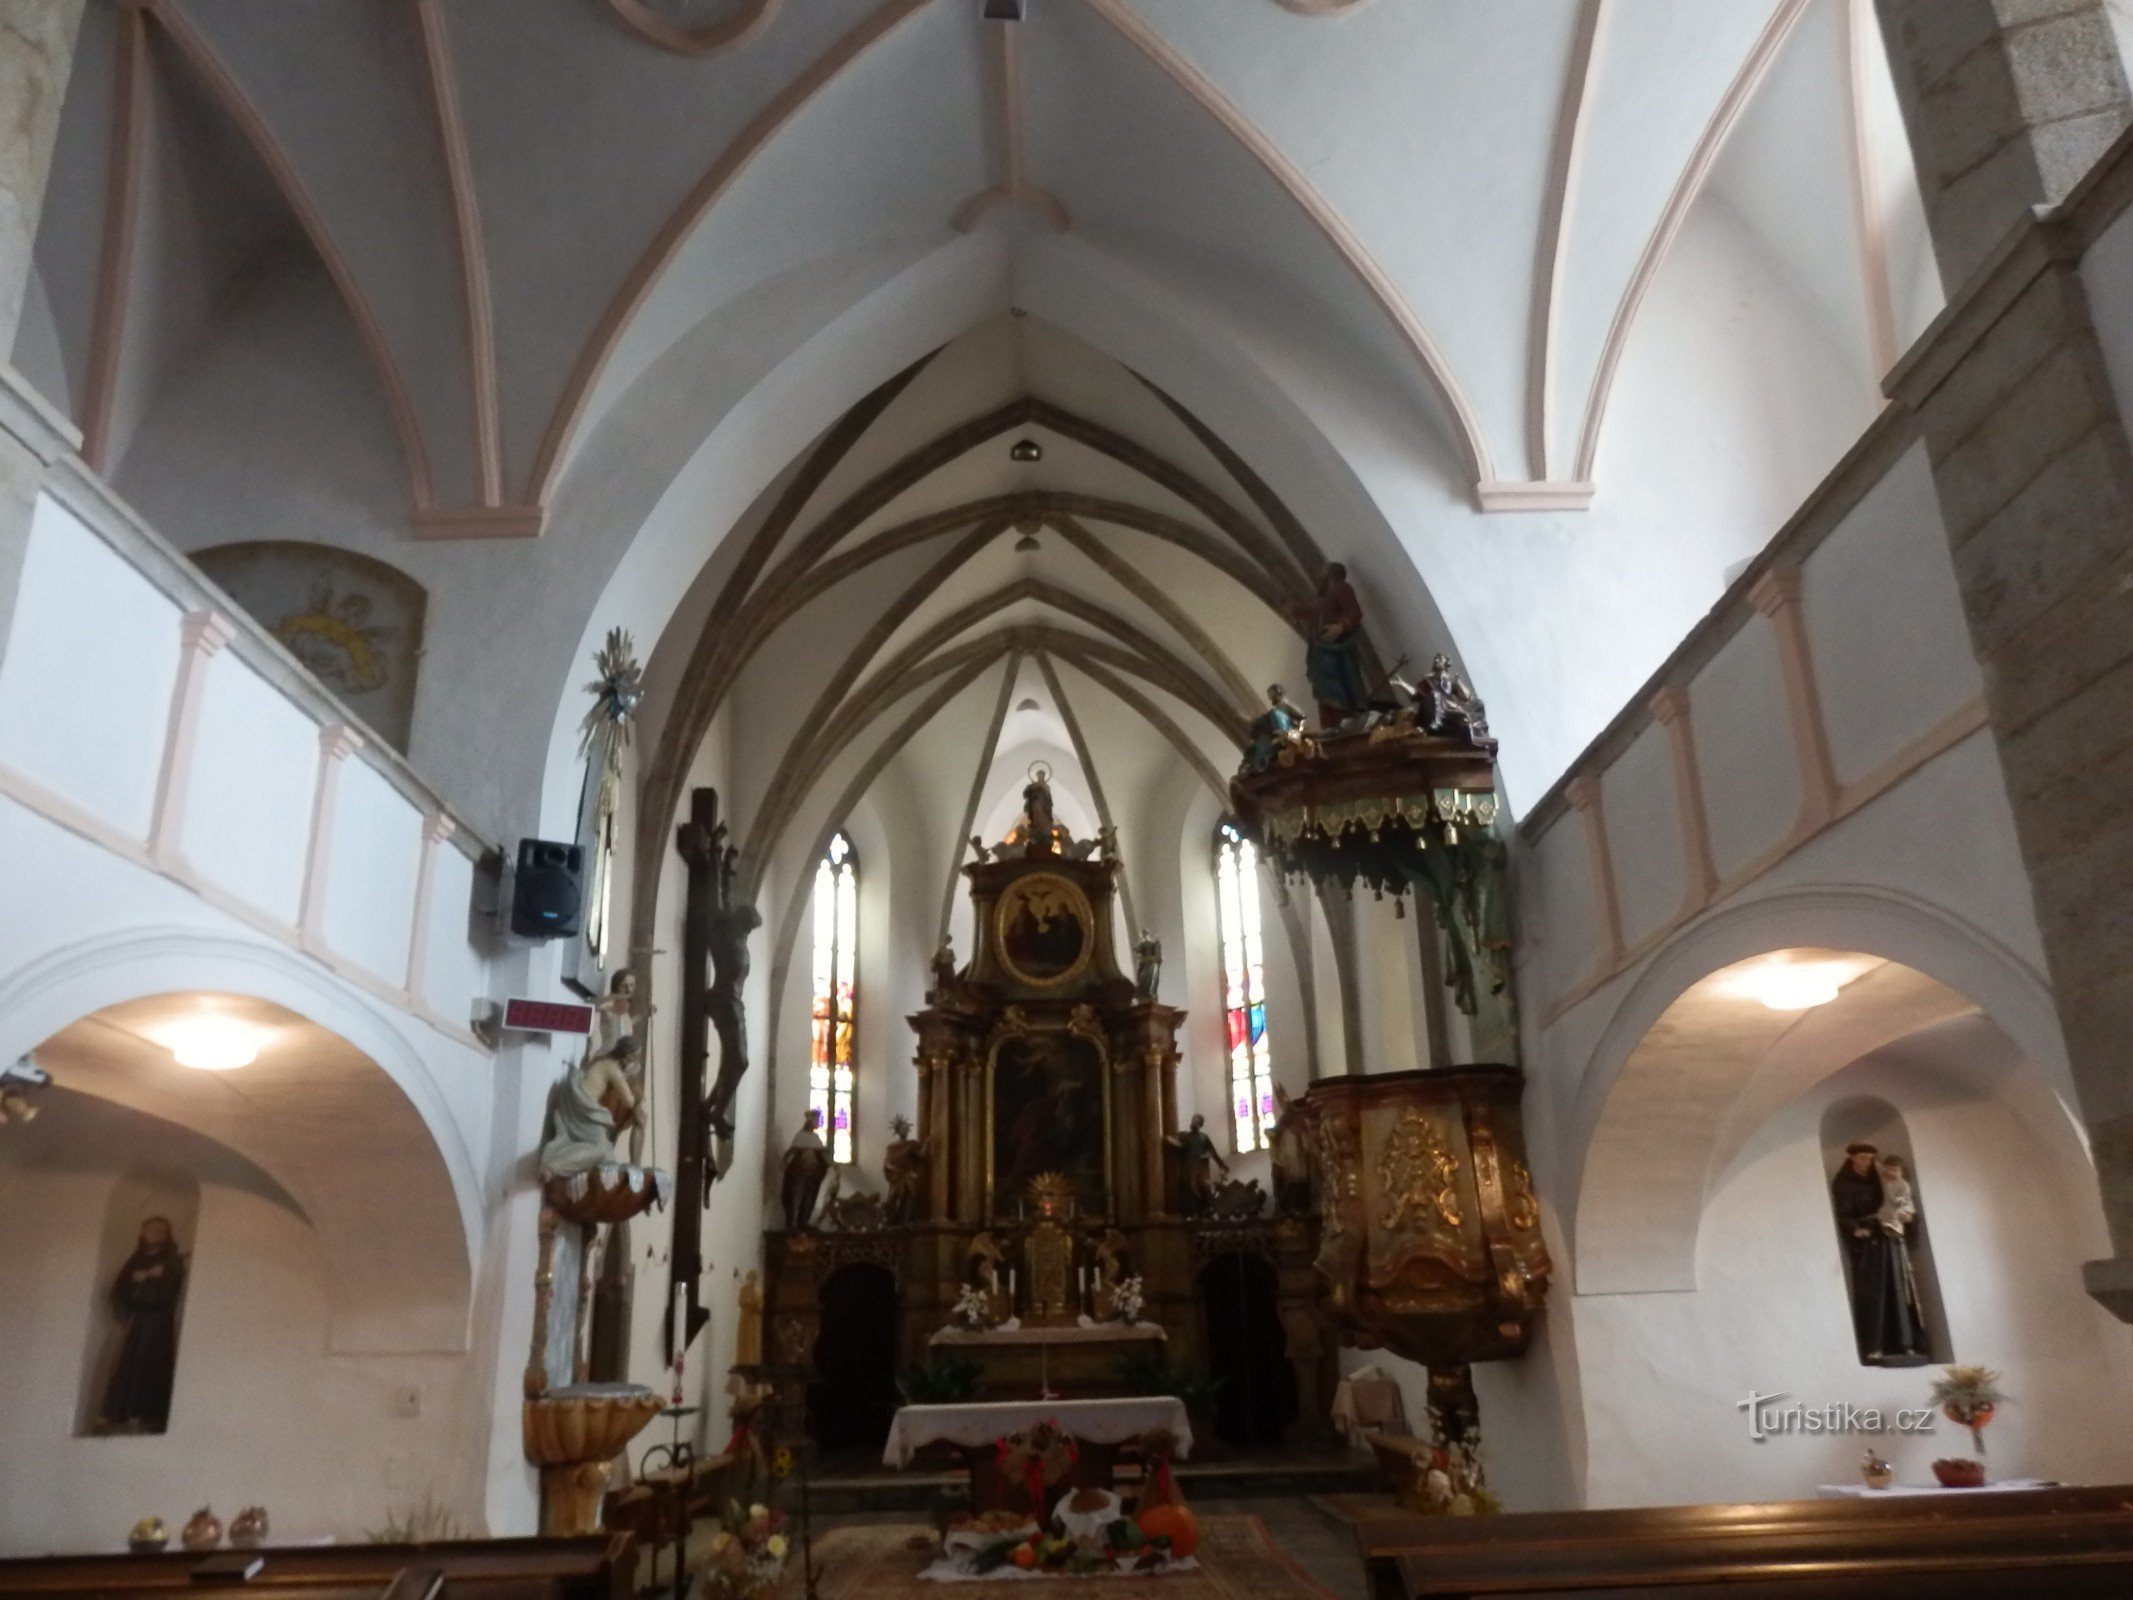 Innenraum der Kirche St. Stanislawa